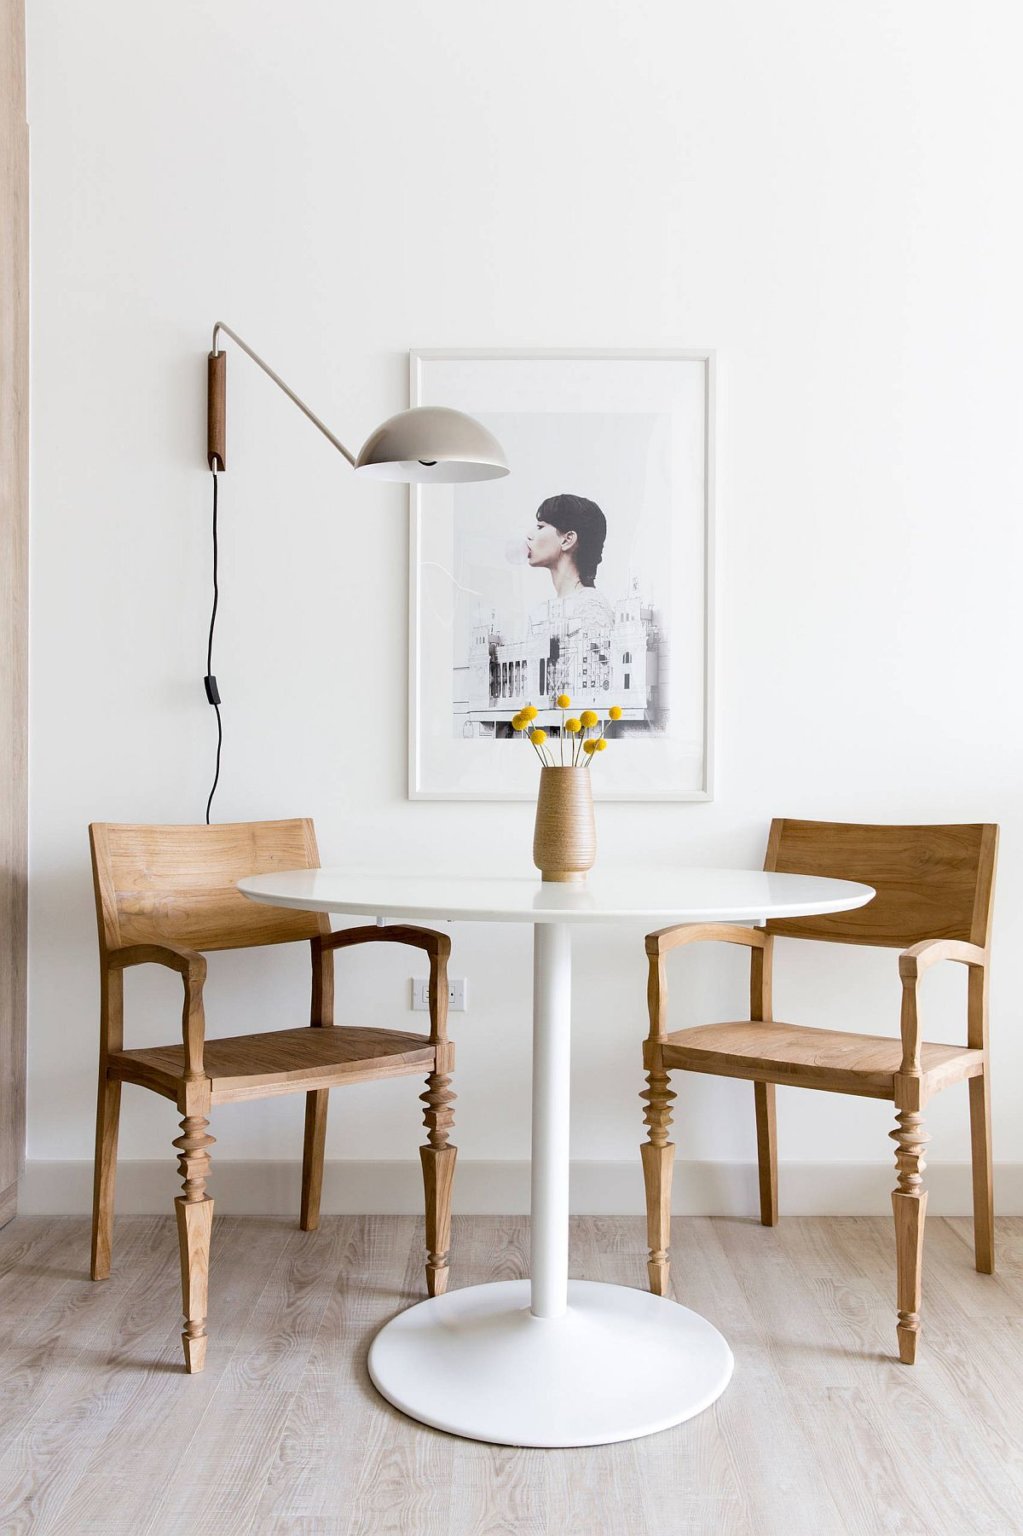 Hình ảnh cận cảnh bàn ăn tròn nhỏ màu trắng kết hợp hai ghế gỗ